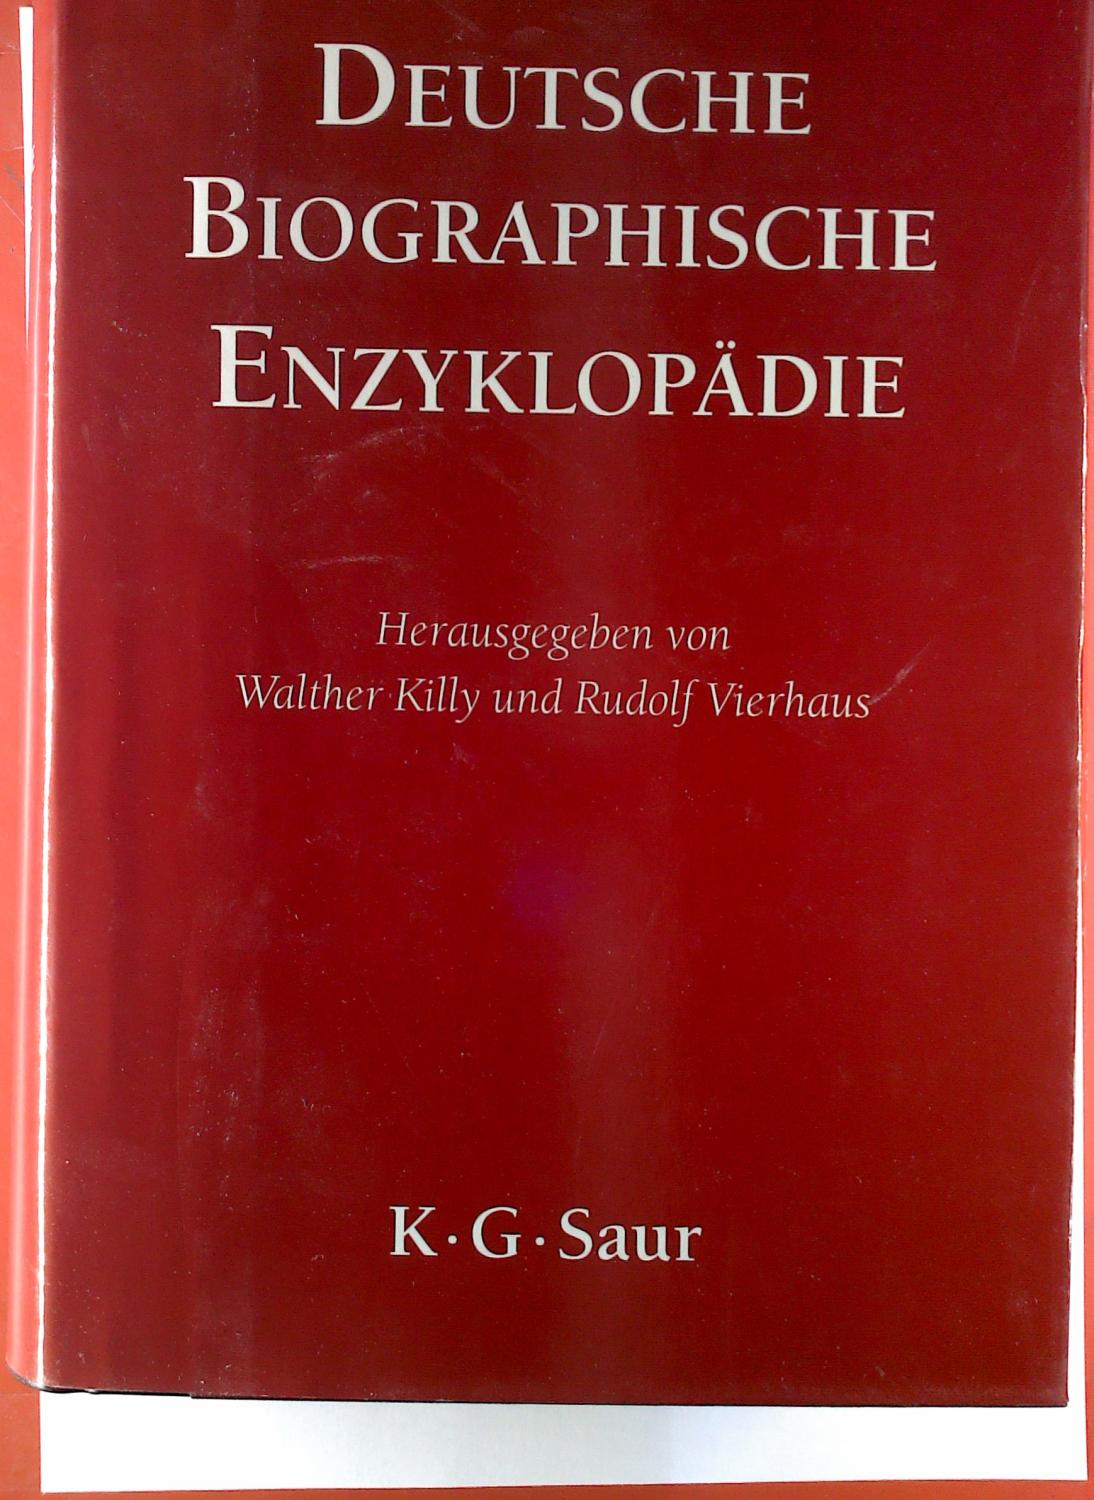 Deutsche biographische Enzyklopädie. Band 6, Kogel - Maxsein. - Walther Killy, Rudolf Vierhaus